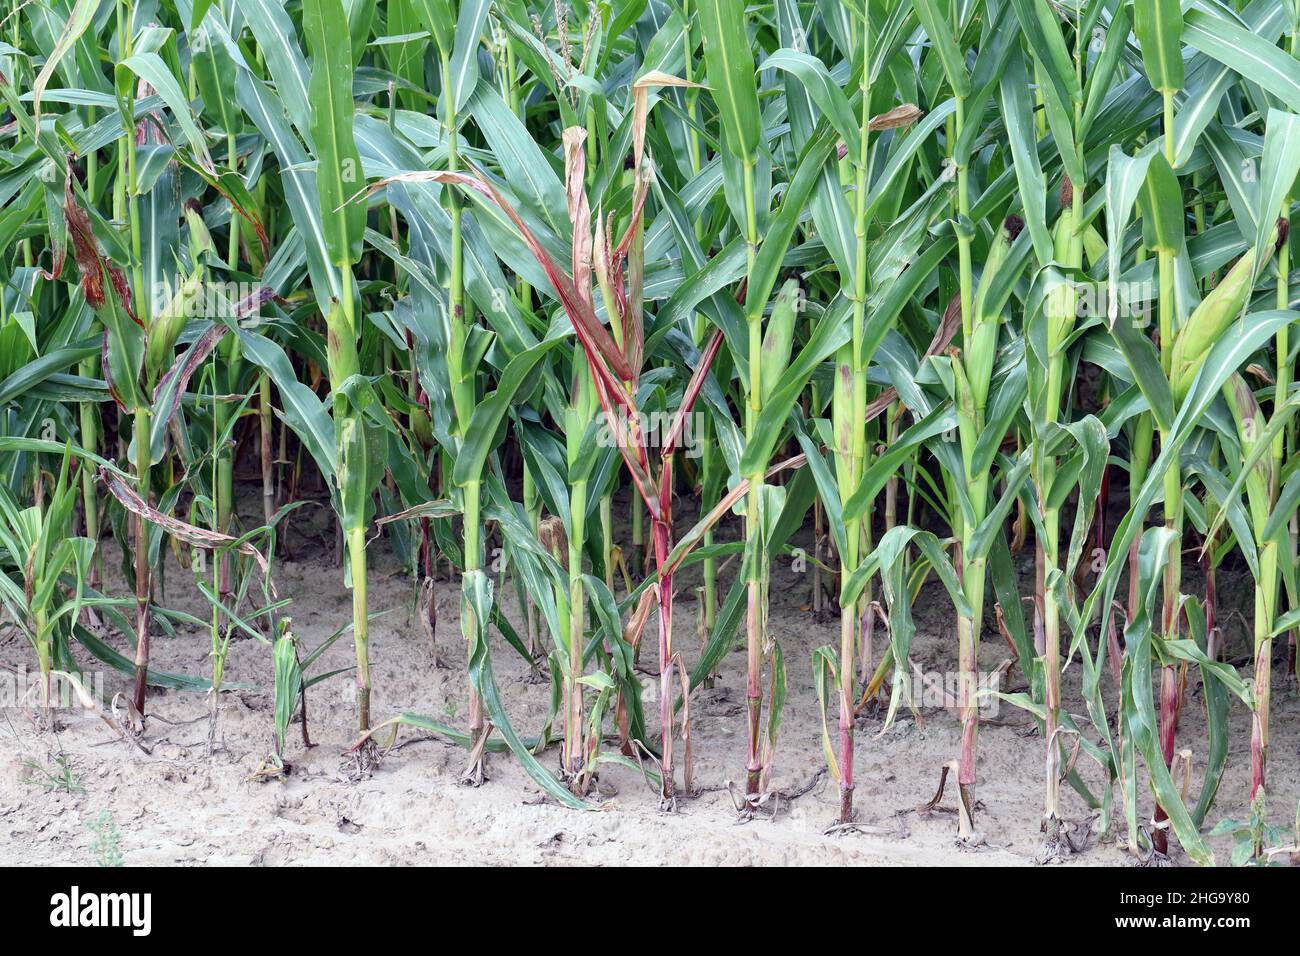 Rote Verfärbung von Maisblättern aufgrund von Nährstoffmangel oder Krankheiten, die durch Viren oder Bakterien verursacht werden. Stockfoto